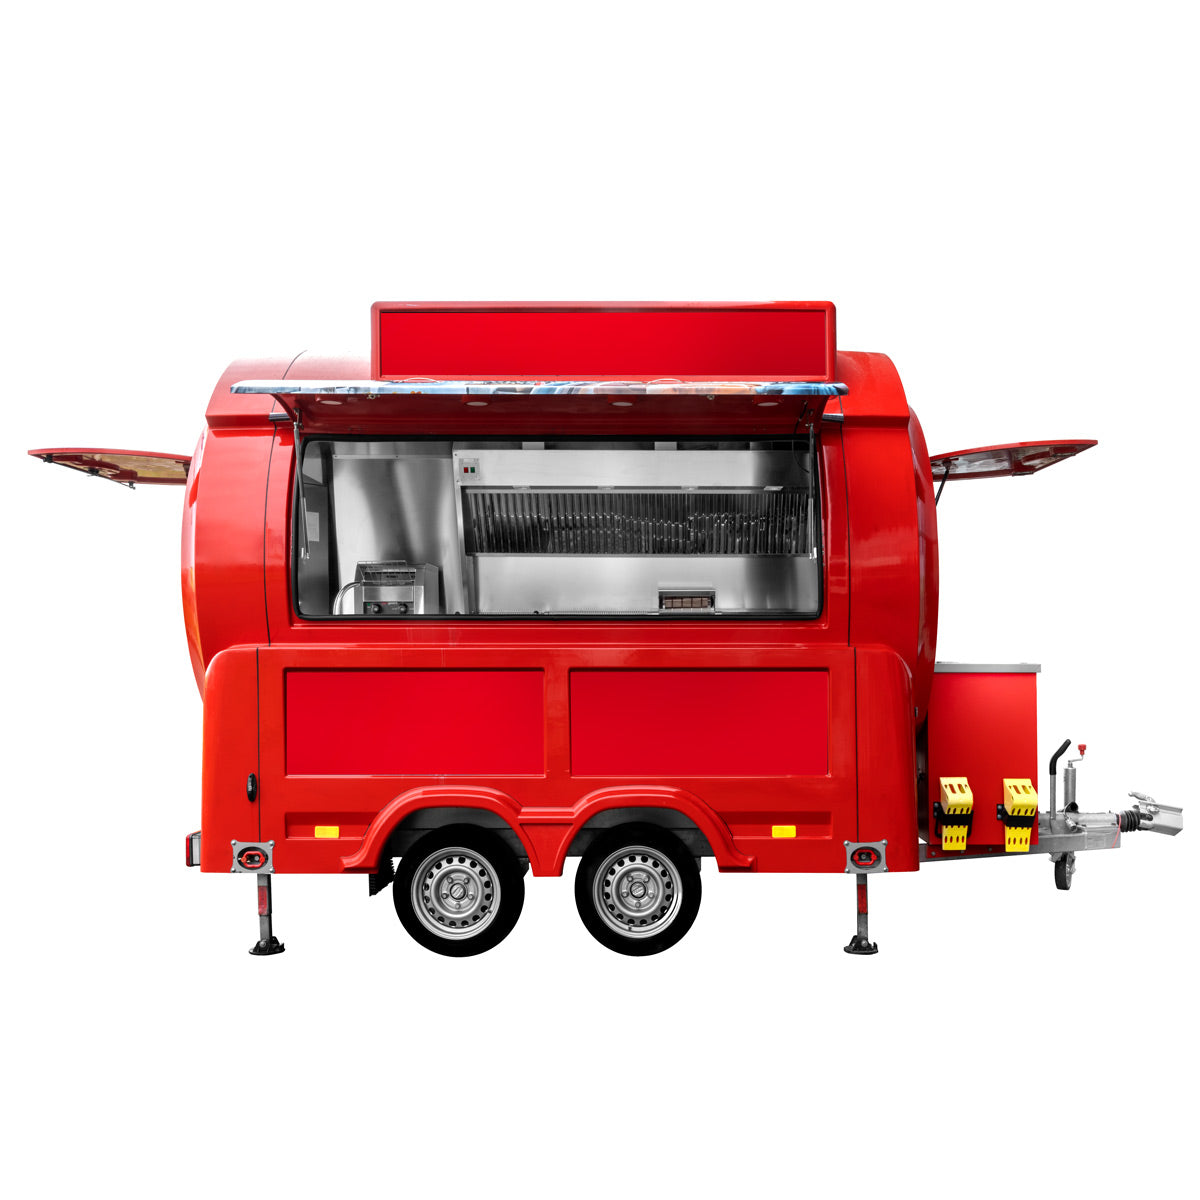 Mobilt køkken af GGM - Tema: Fastfood / basisudstyr